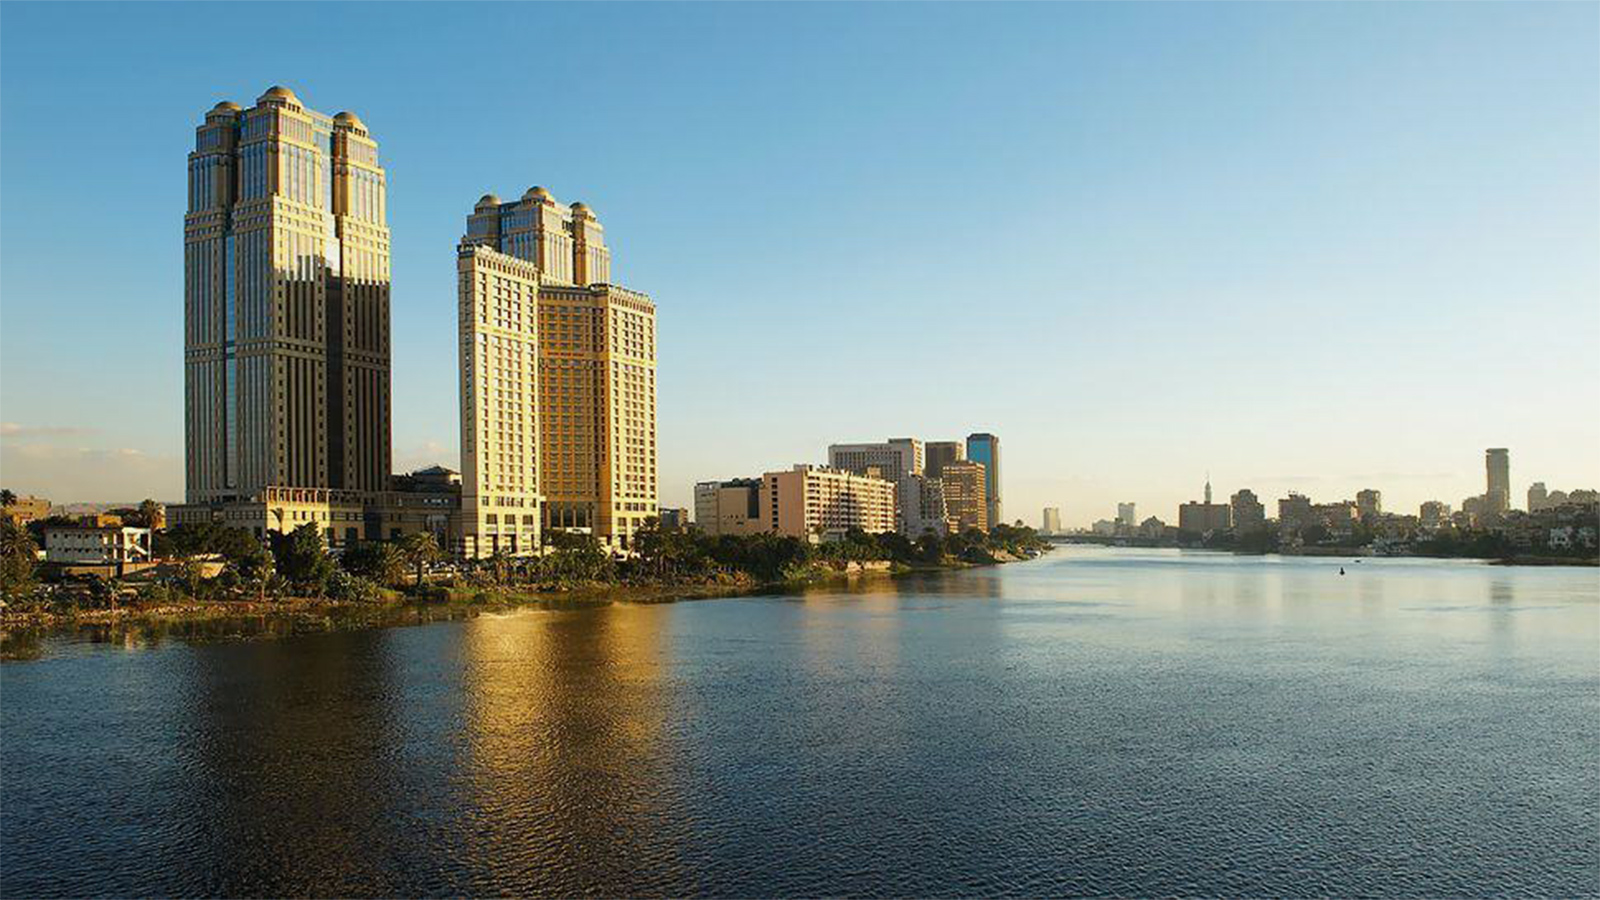  فندق فيرمونت نايل سيتي بمصر يمنح زائريه إطلالات مبهرة على نهر النيل (الصحافة الأميركية)